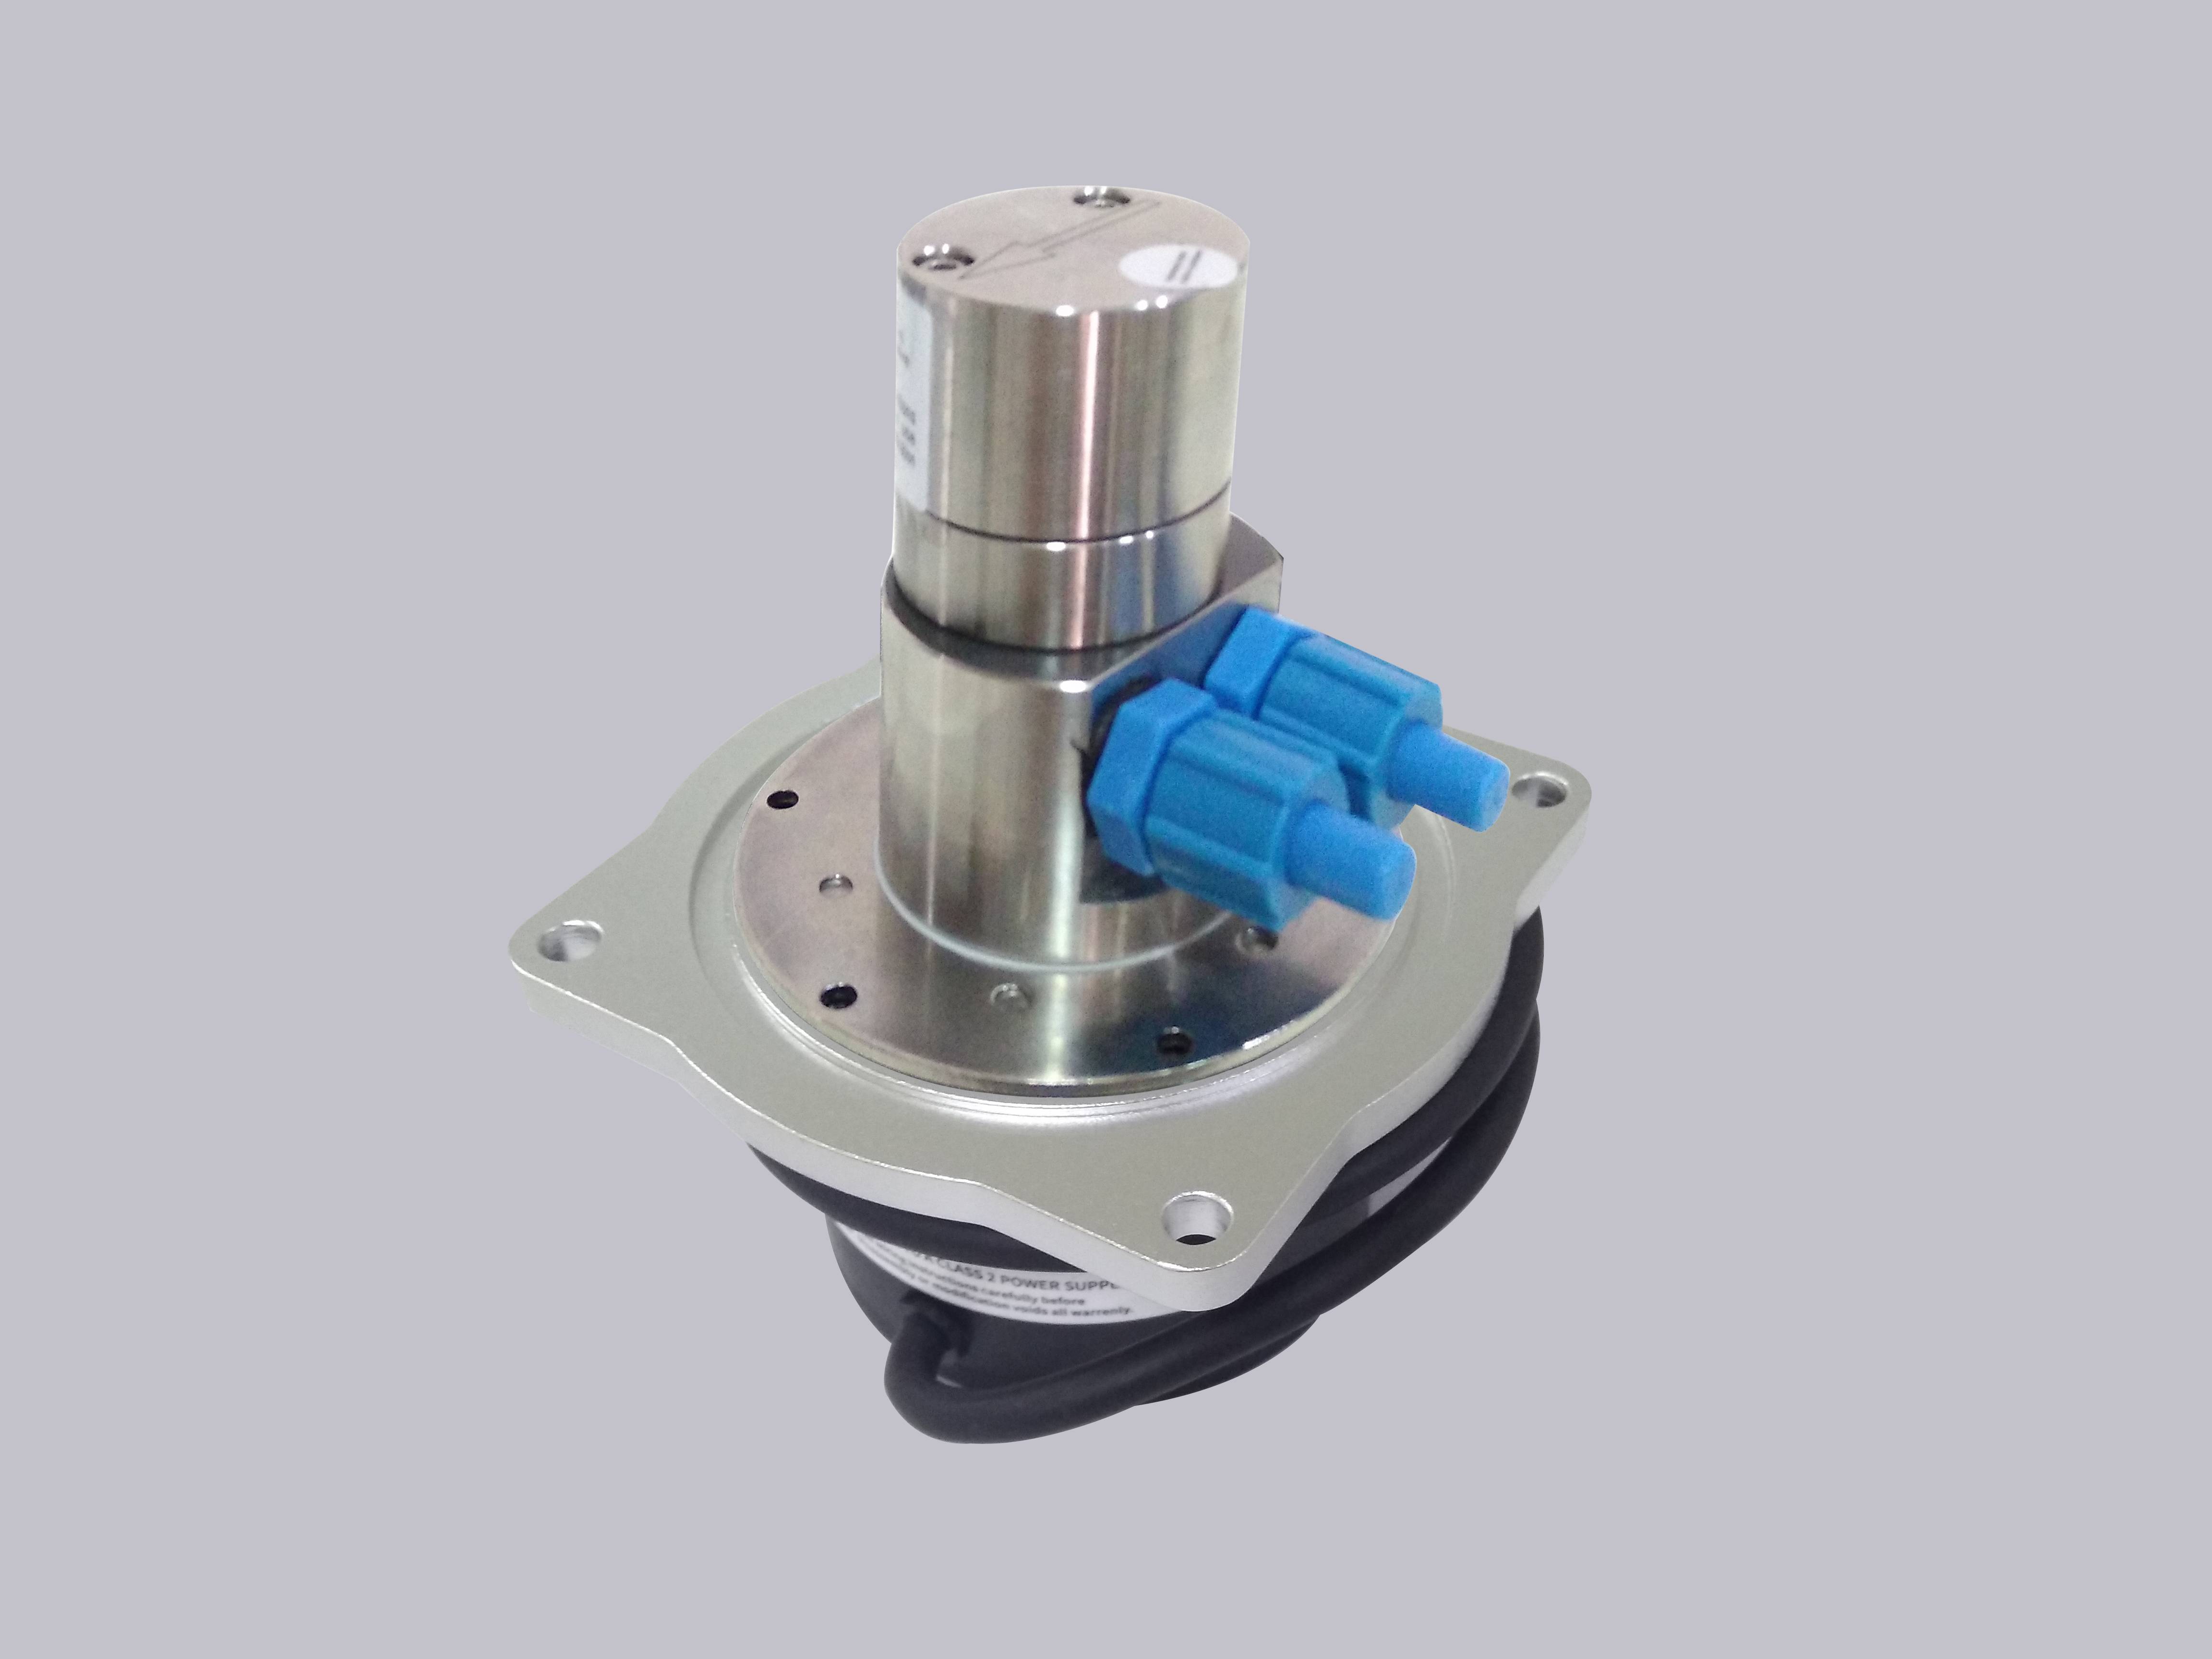 高品质 DM-PP0130 ECJ压力泵MG(40W) 兼容 易码